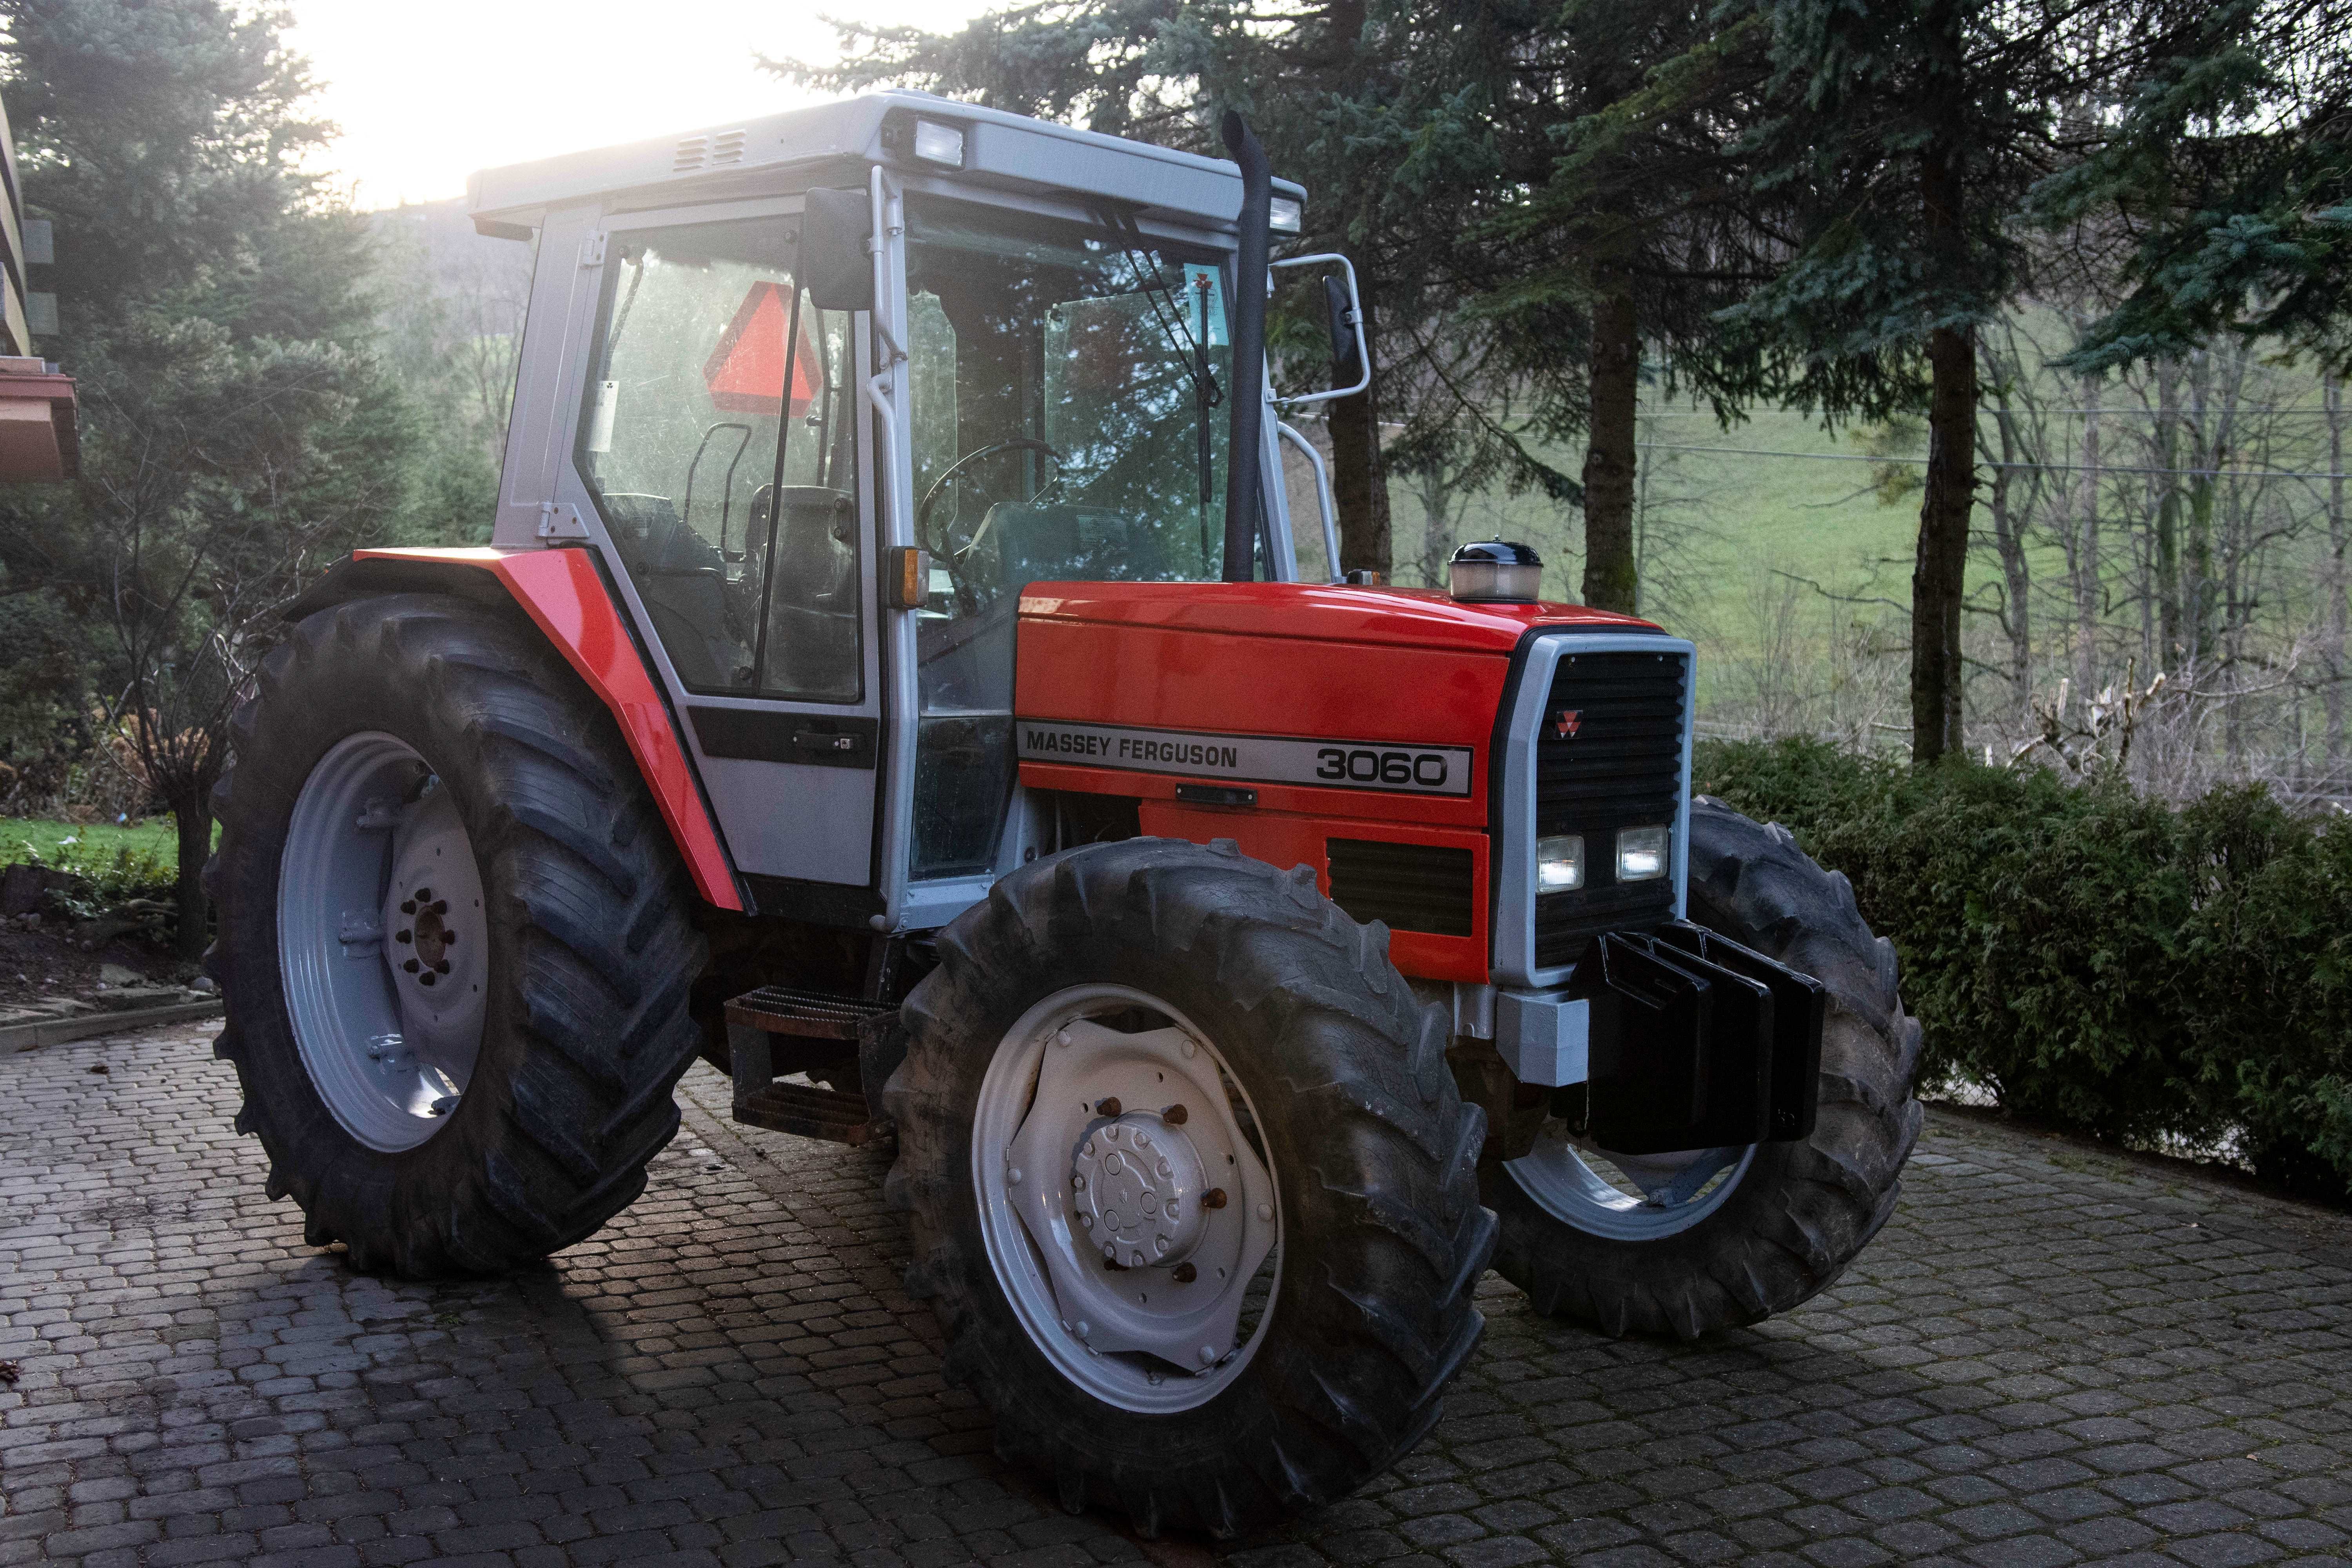 Ciągnik rolniczy traktor massey ferguson 3060